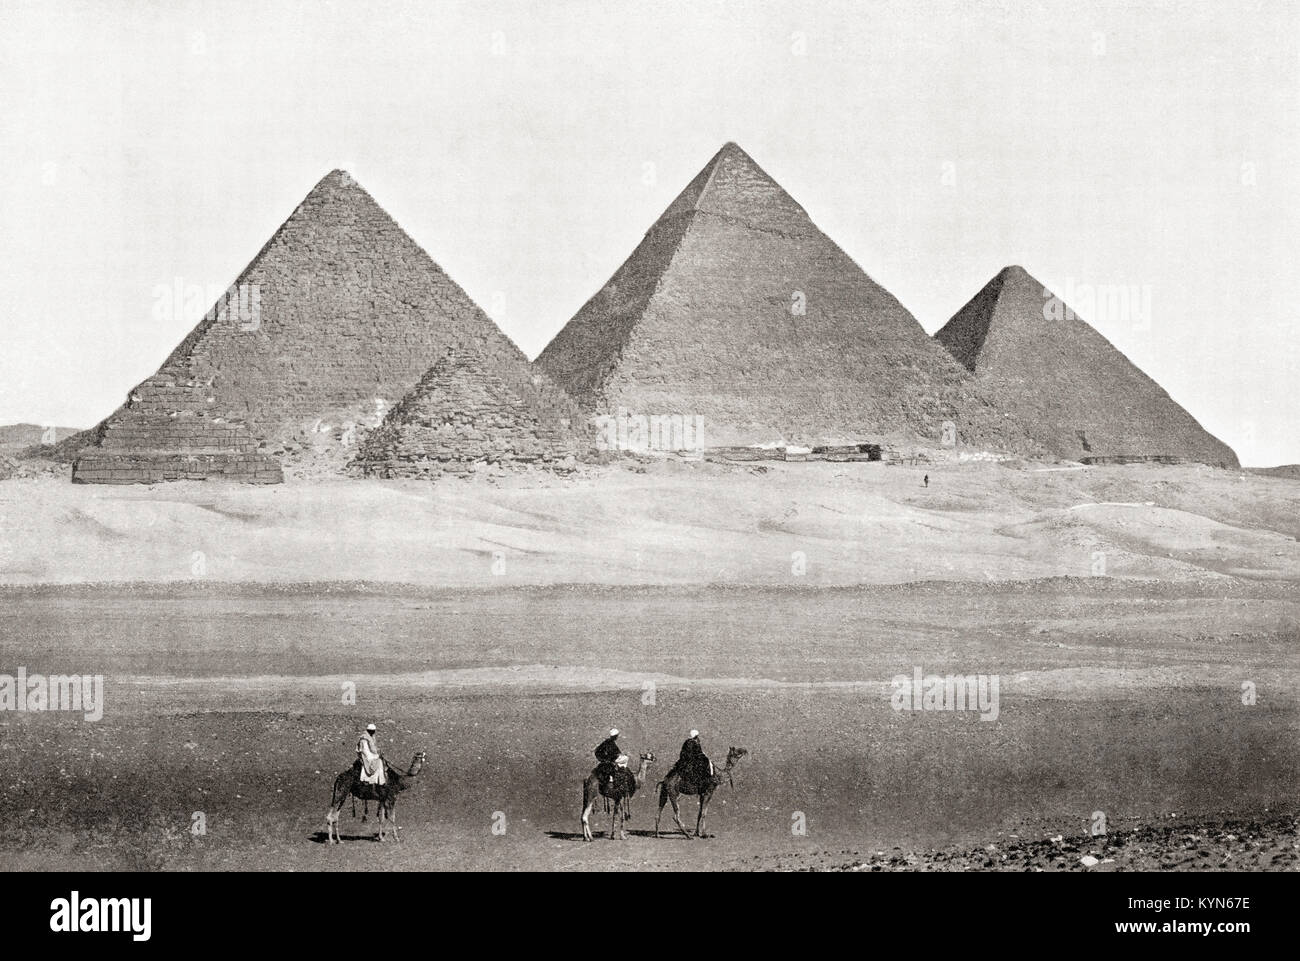 Las pirámides de Giza, en la meseta de Giza en El Cairo, Egipto. La Gran Pirámide de Giza aka la pirámide de Keops o Khufu, pirámide de Khafre aka Chephren y la Pirámide de Menkaure aka Mykerinos. A partir de las Maravillas del Mundo, publicado c.1920. Foto de stock